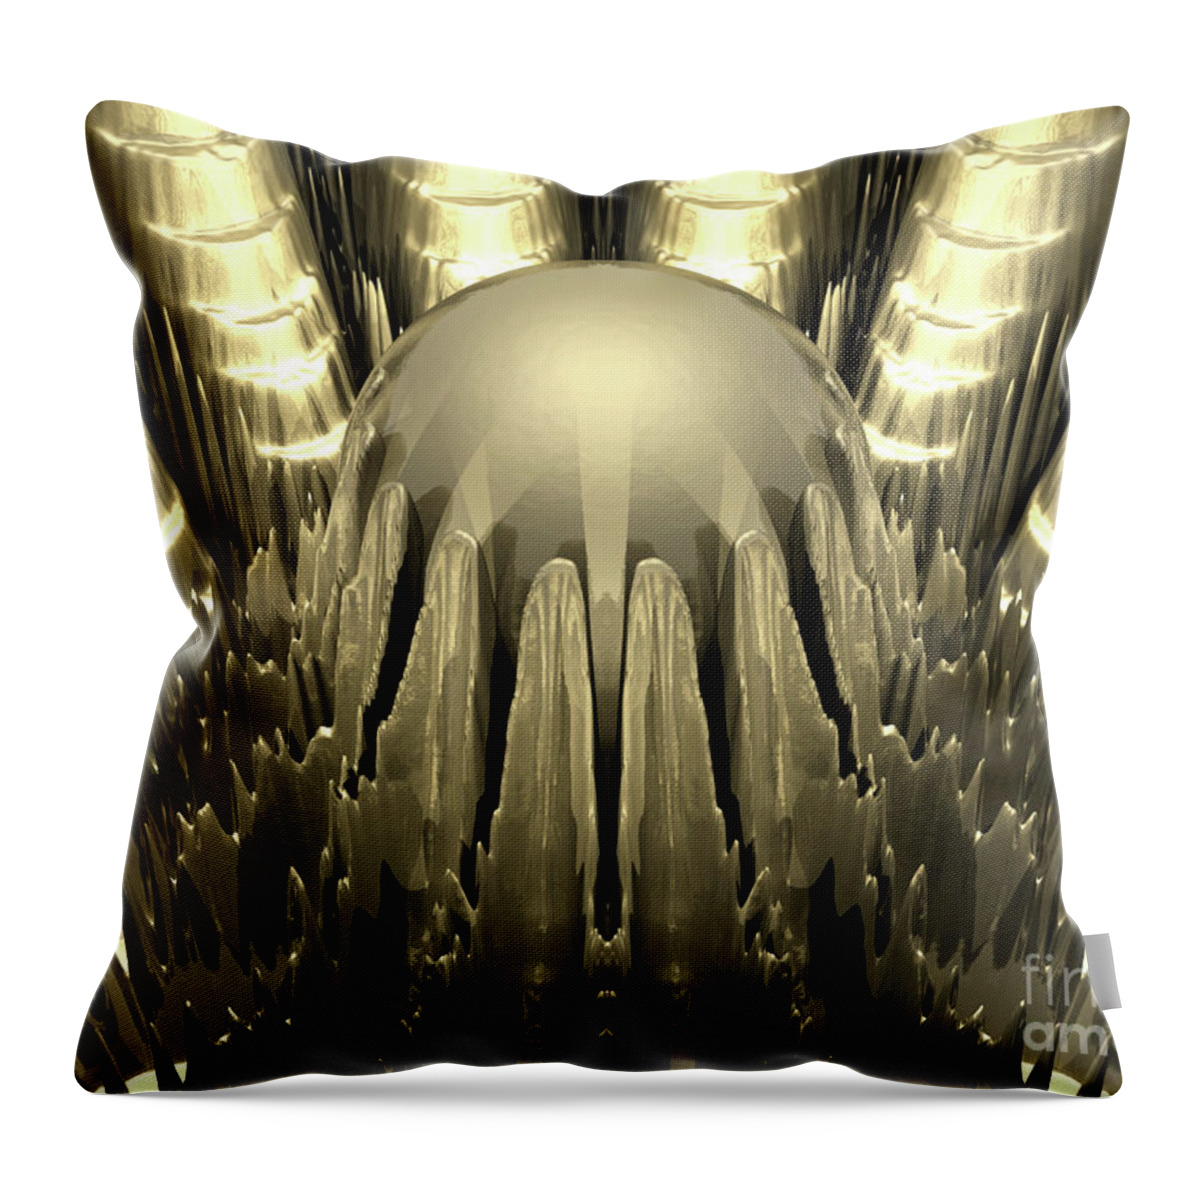 Digital Art Throw Pillow featuring the digital art Golden Fractal by Phil Perkins